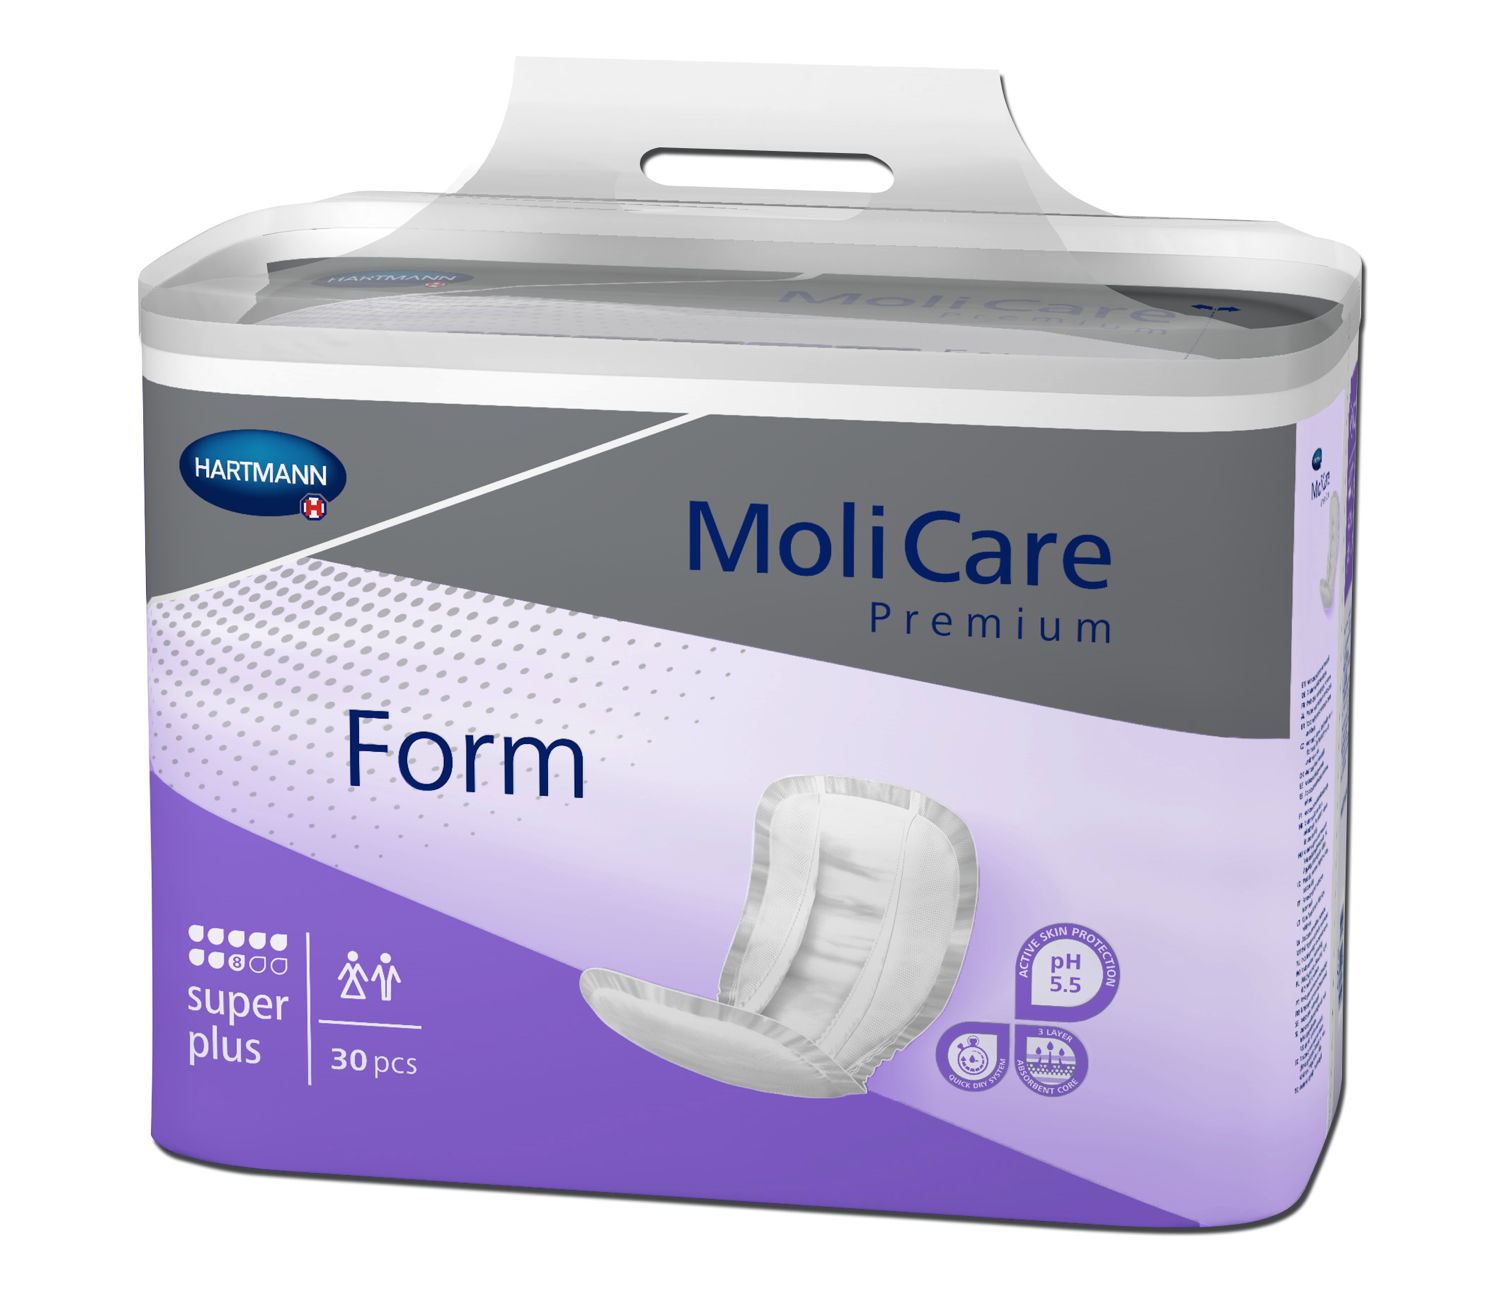 MoliCare Premium Form super plus